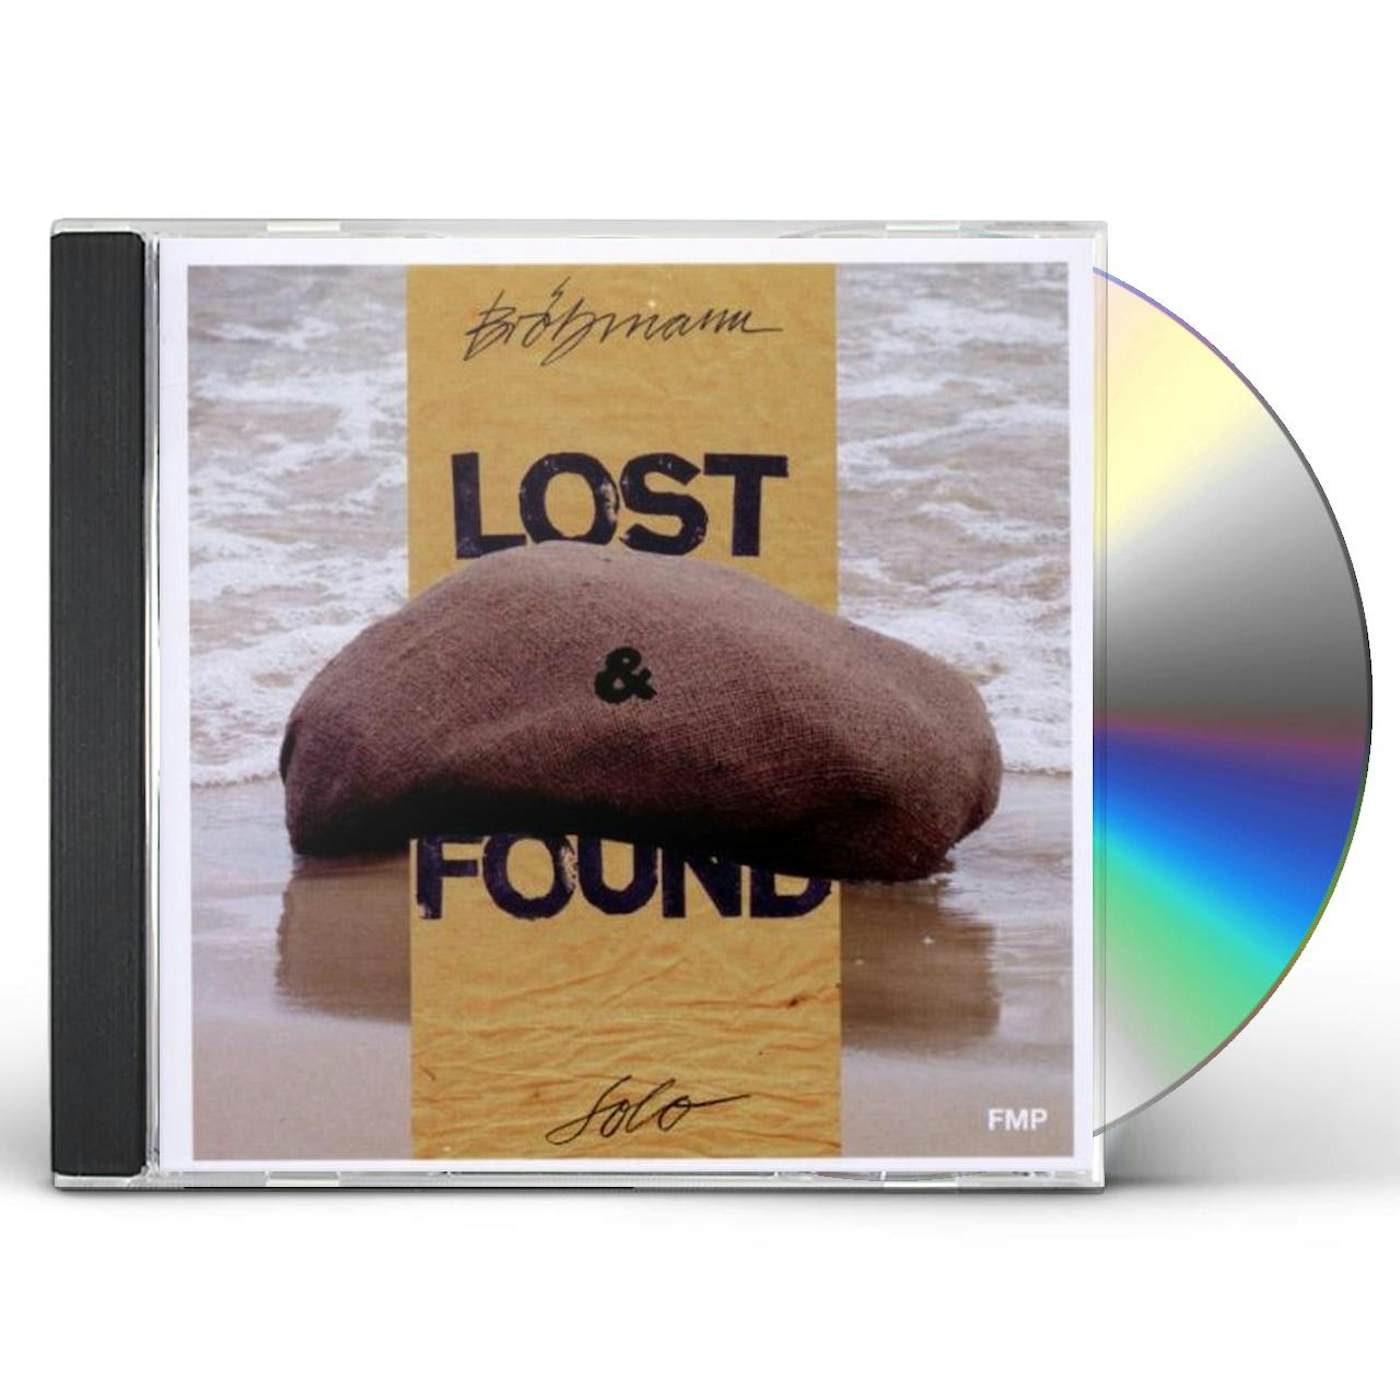 Peter Broetzmann LOST & FOUND CD